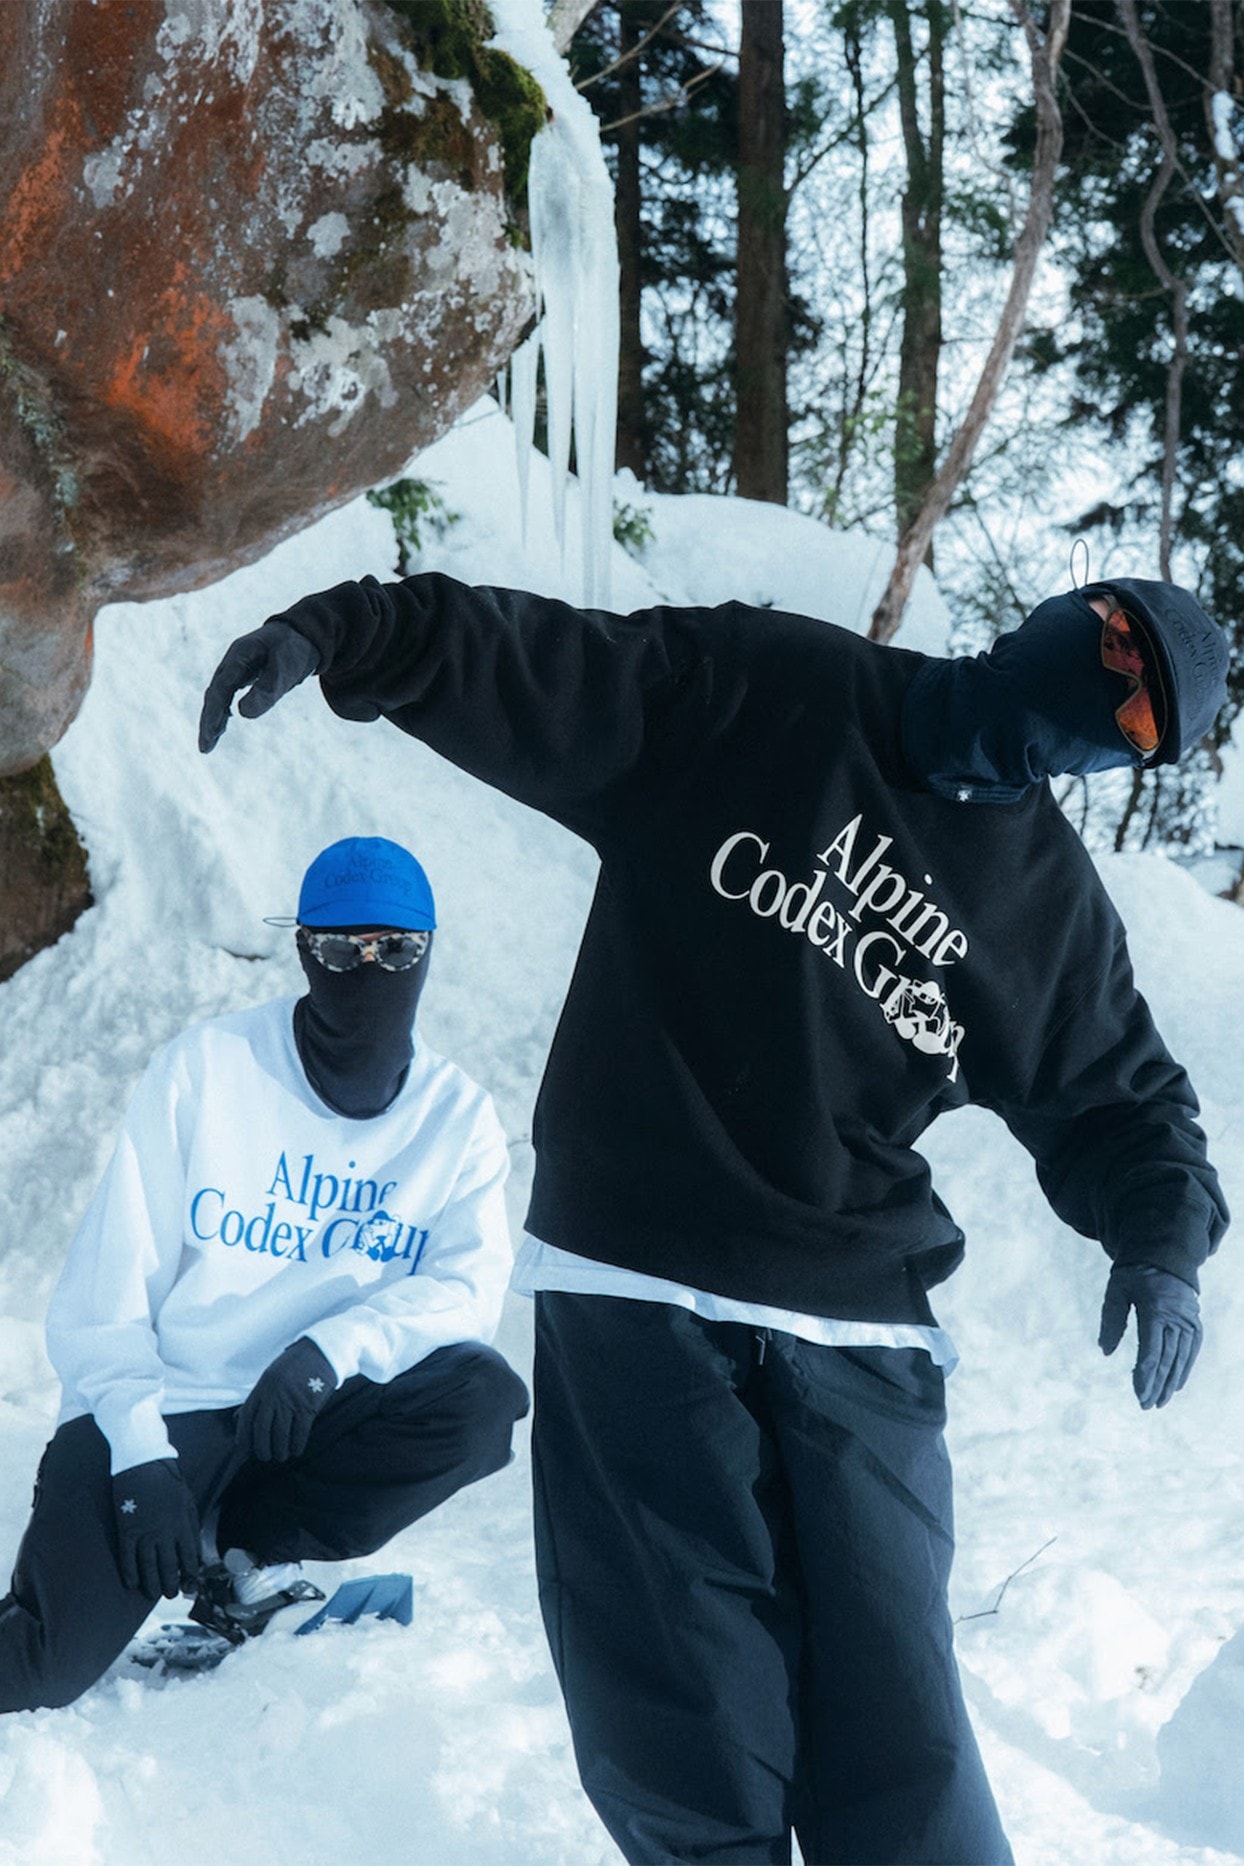 日本戶外品牌 Goldwin 為虛擬徒步旅行團體「Alpine Codex Group」打造獨佔服飾